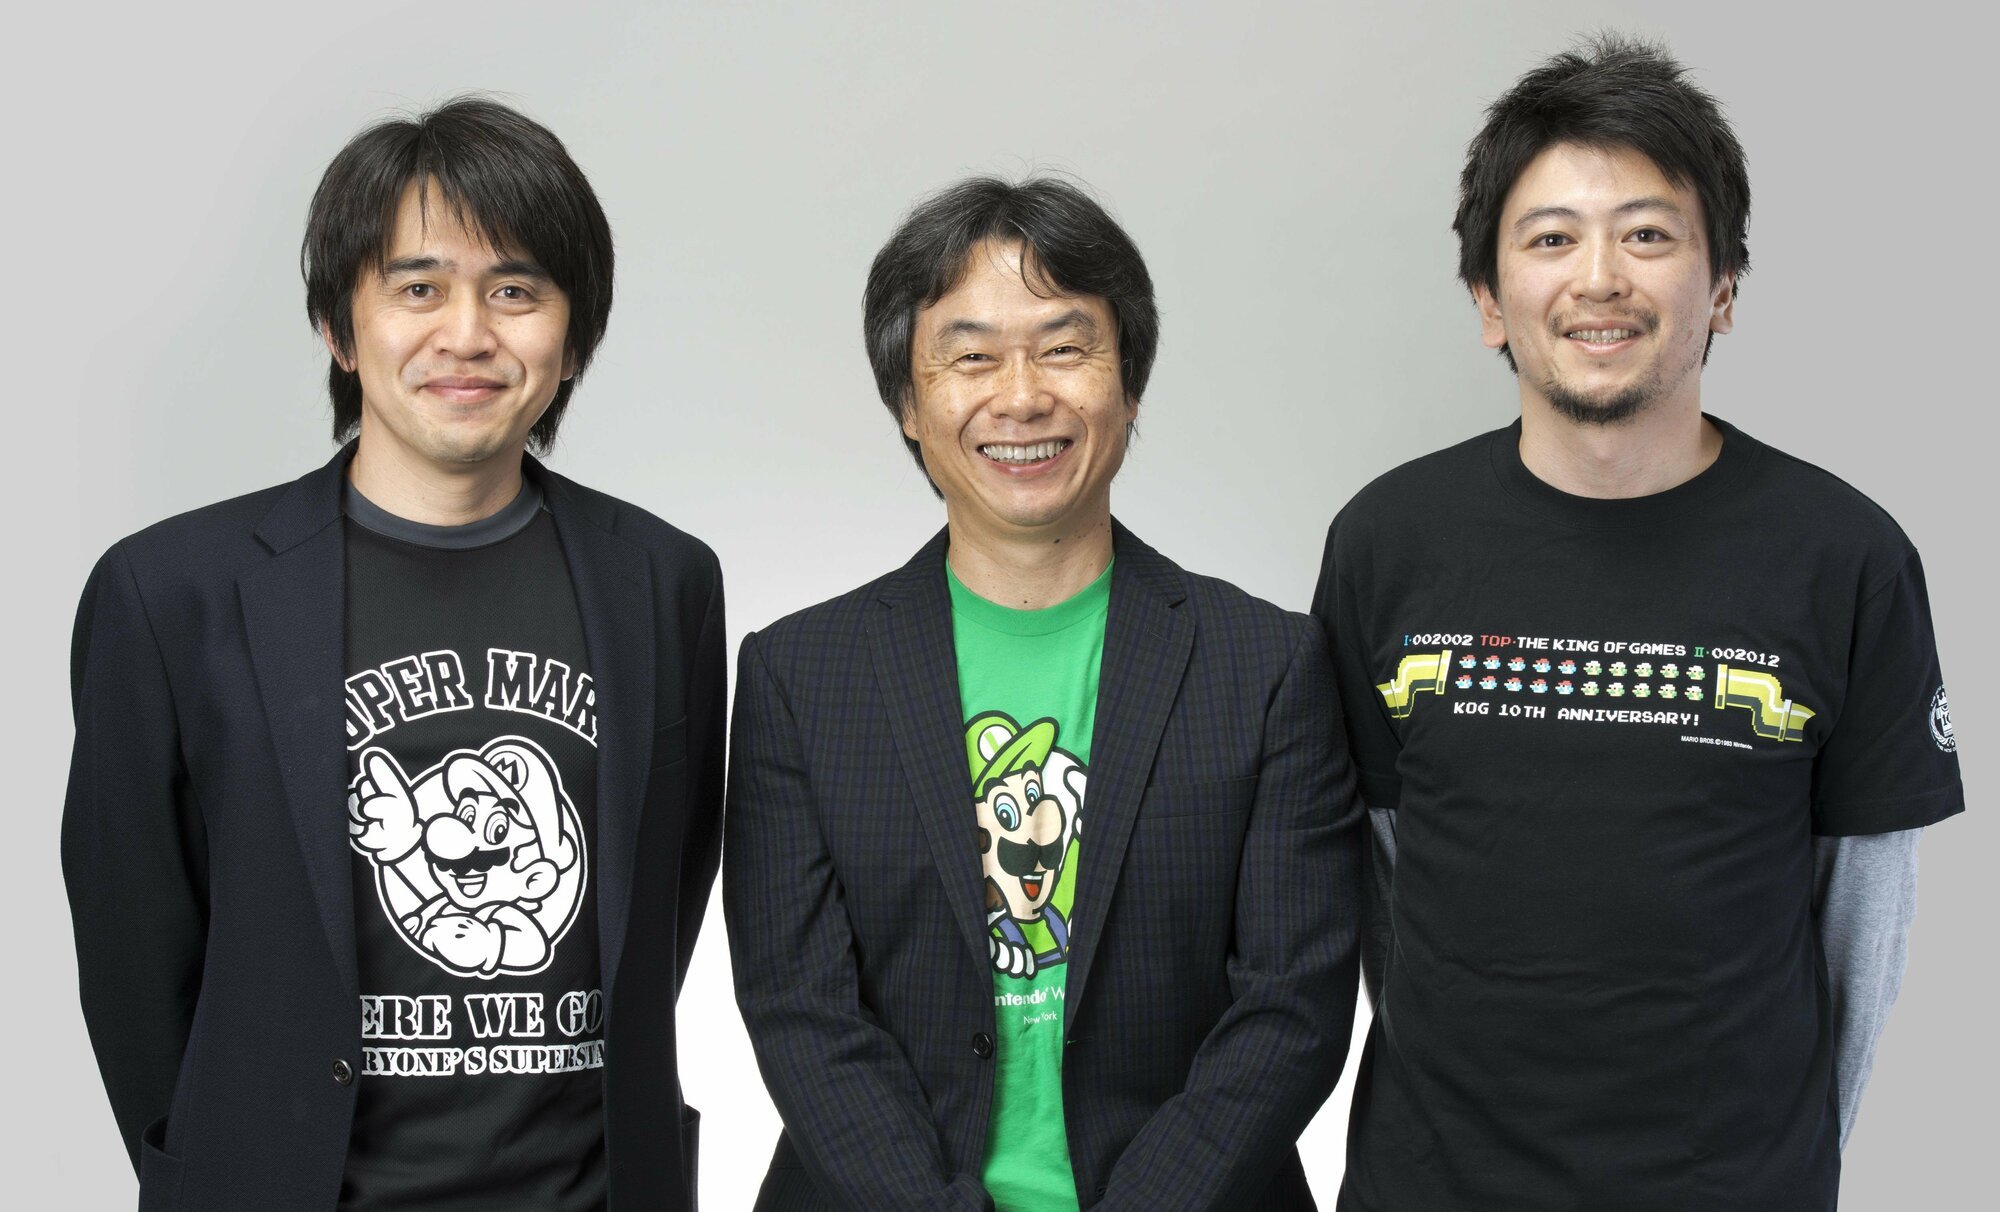 We talk to Mario creator Shigeru Miyamoto about the iconic